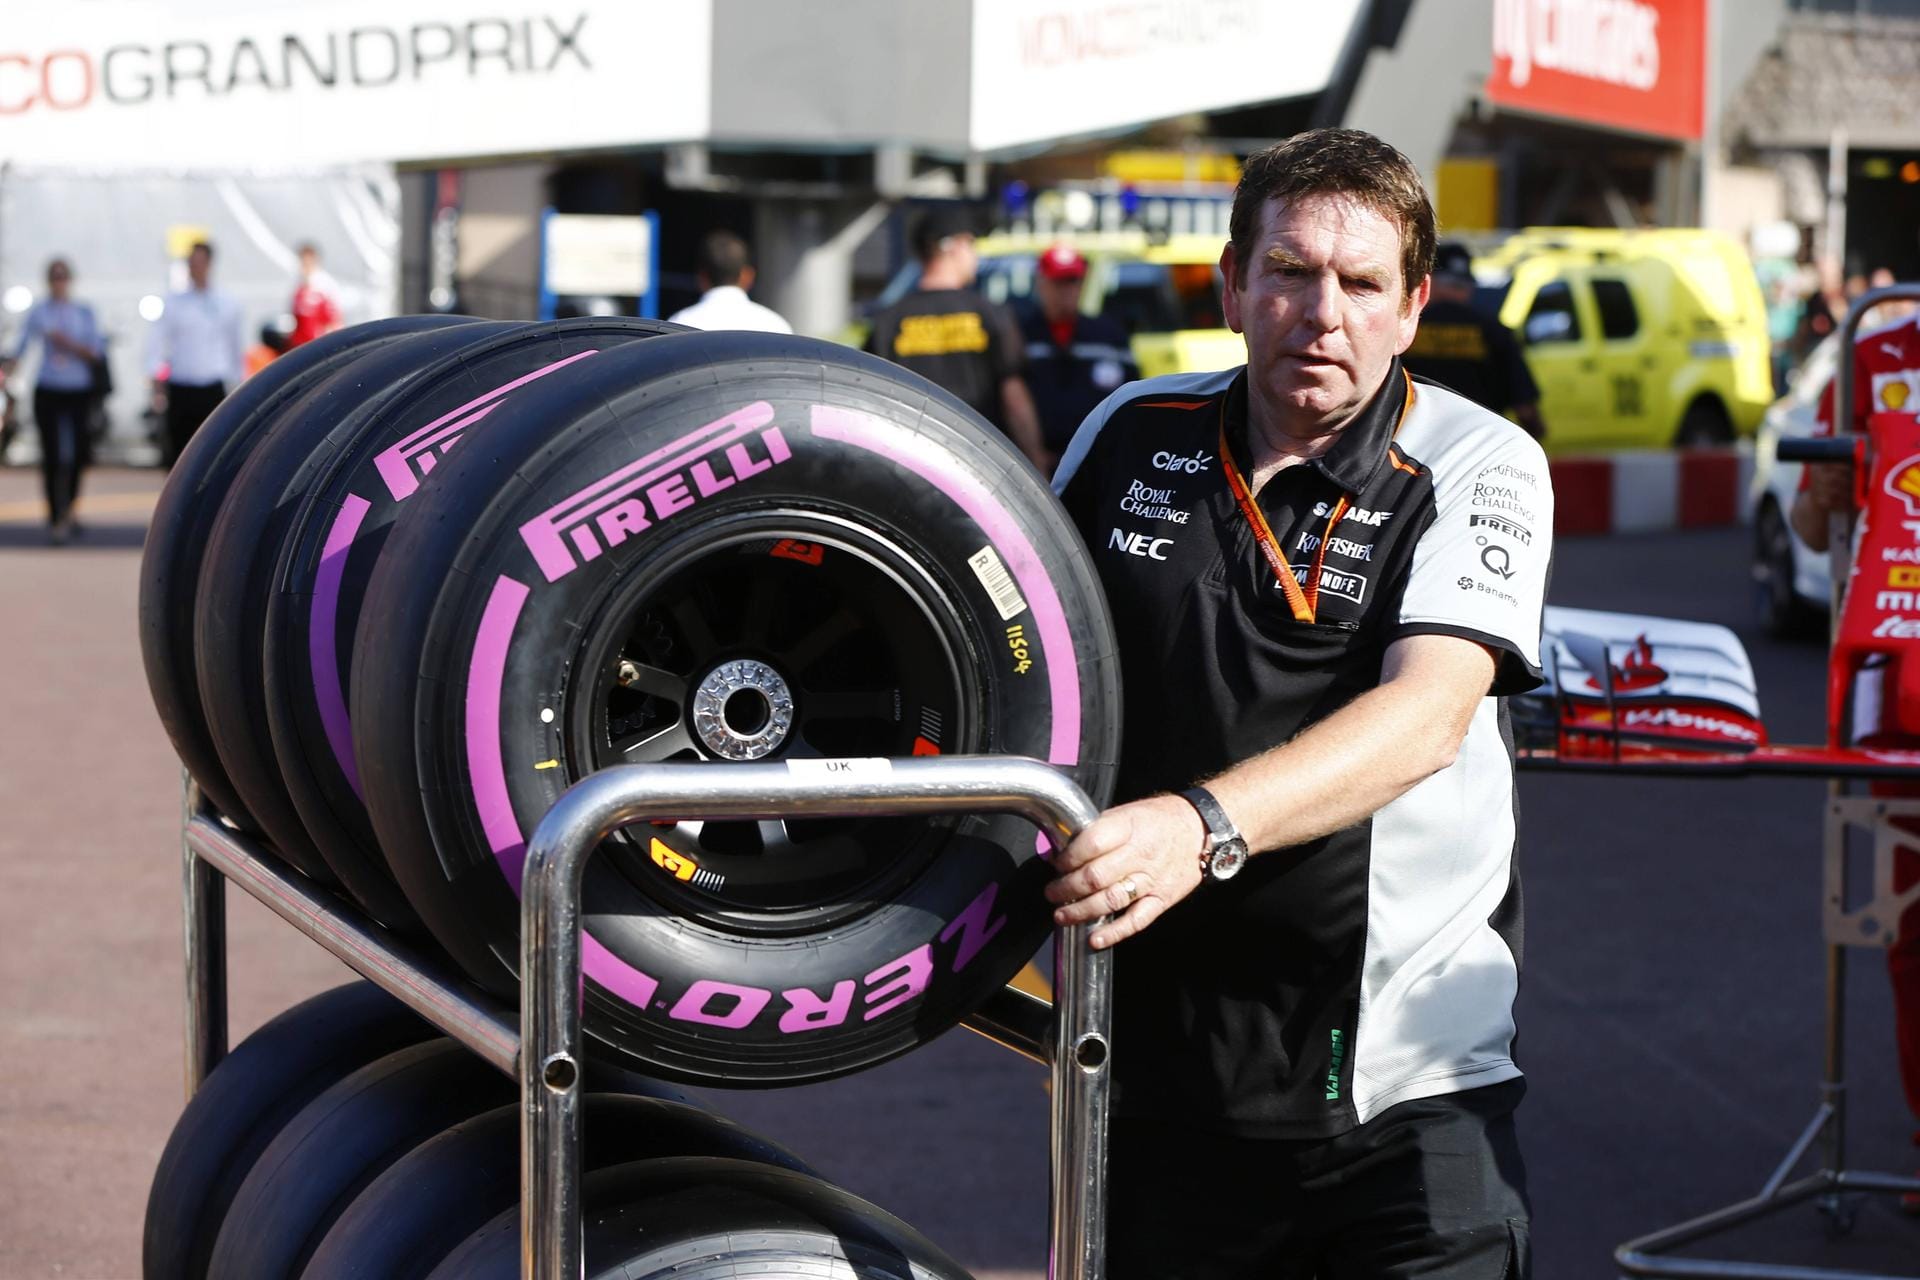 Die neuen Ultrasoft-Reifen kommen beim Monaco-GP erstmals zum Einsatz und sorgen derzeit für reichlich Gesprächsstoff. Einigen Piloten ist die Mischung nicht weich genung.